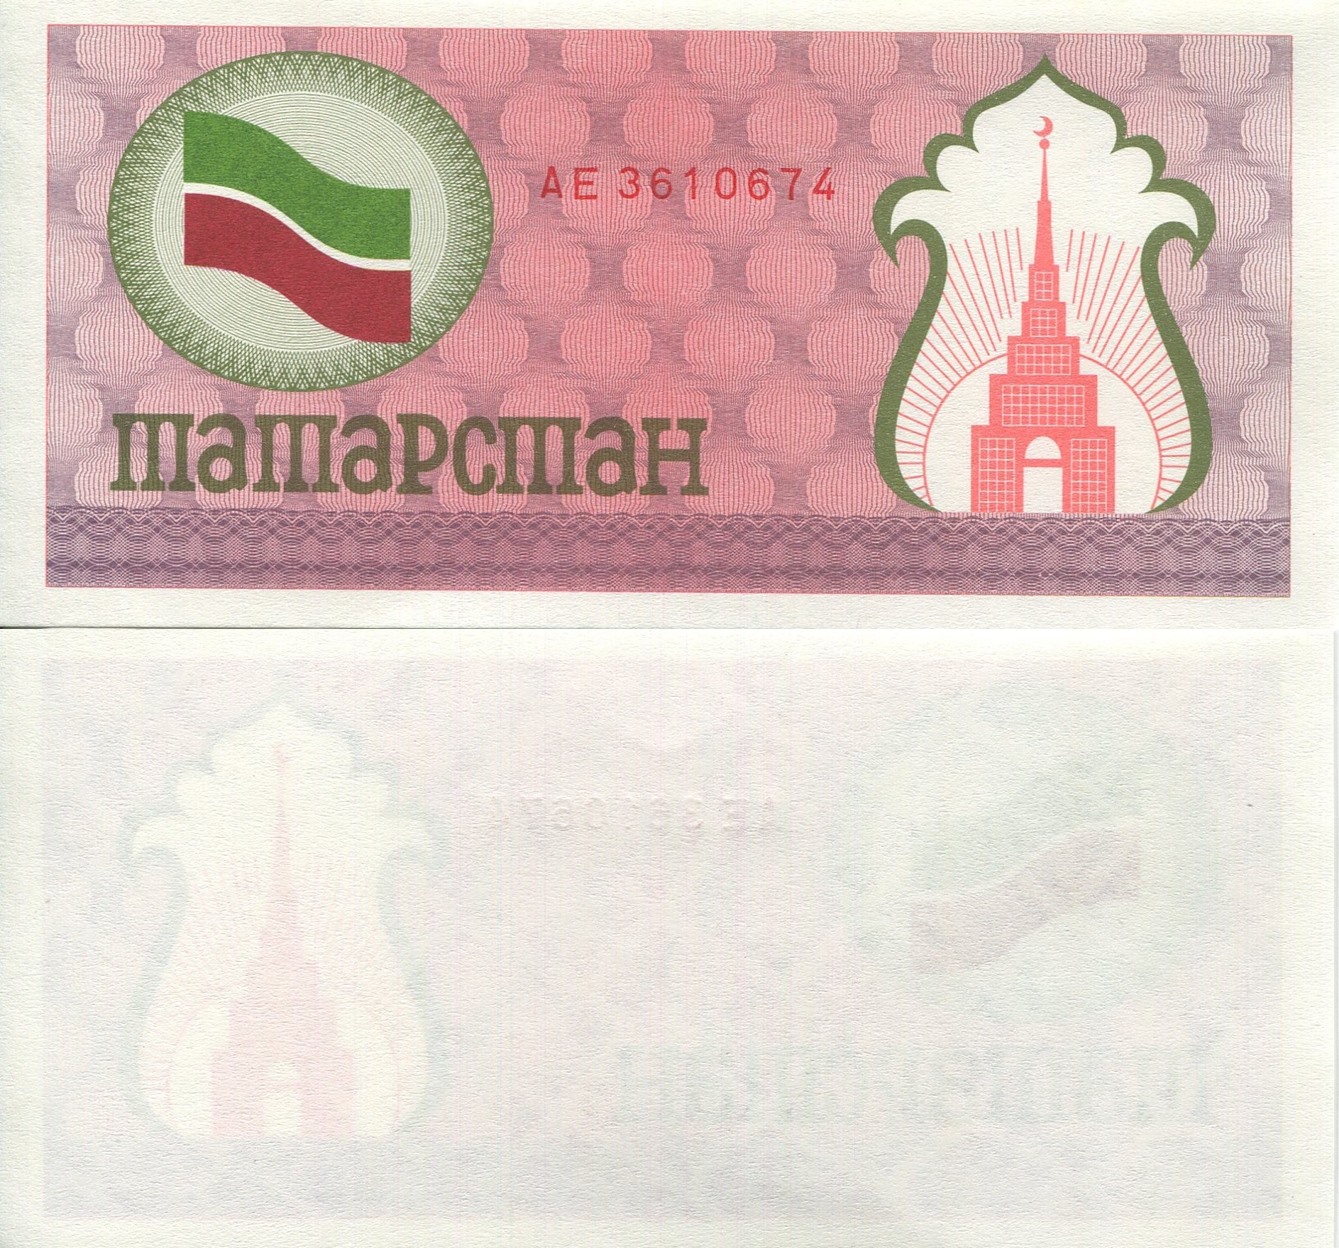 1991-92 RU-TA 100 ruble.jpg